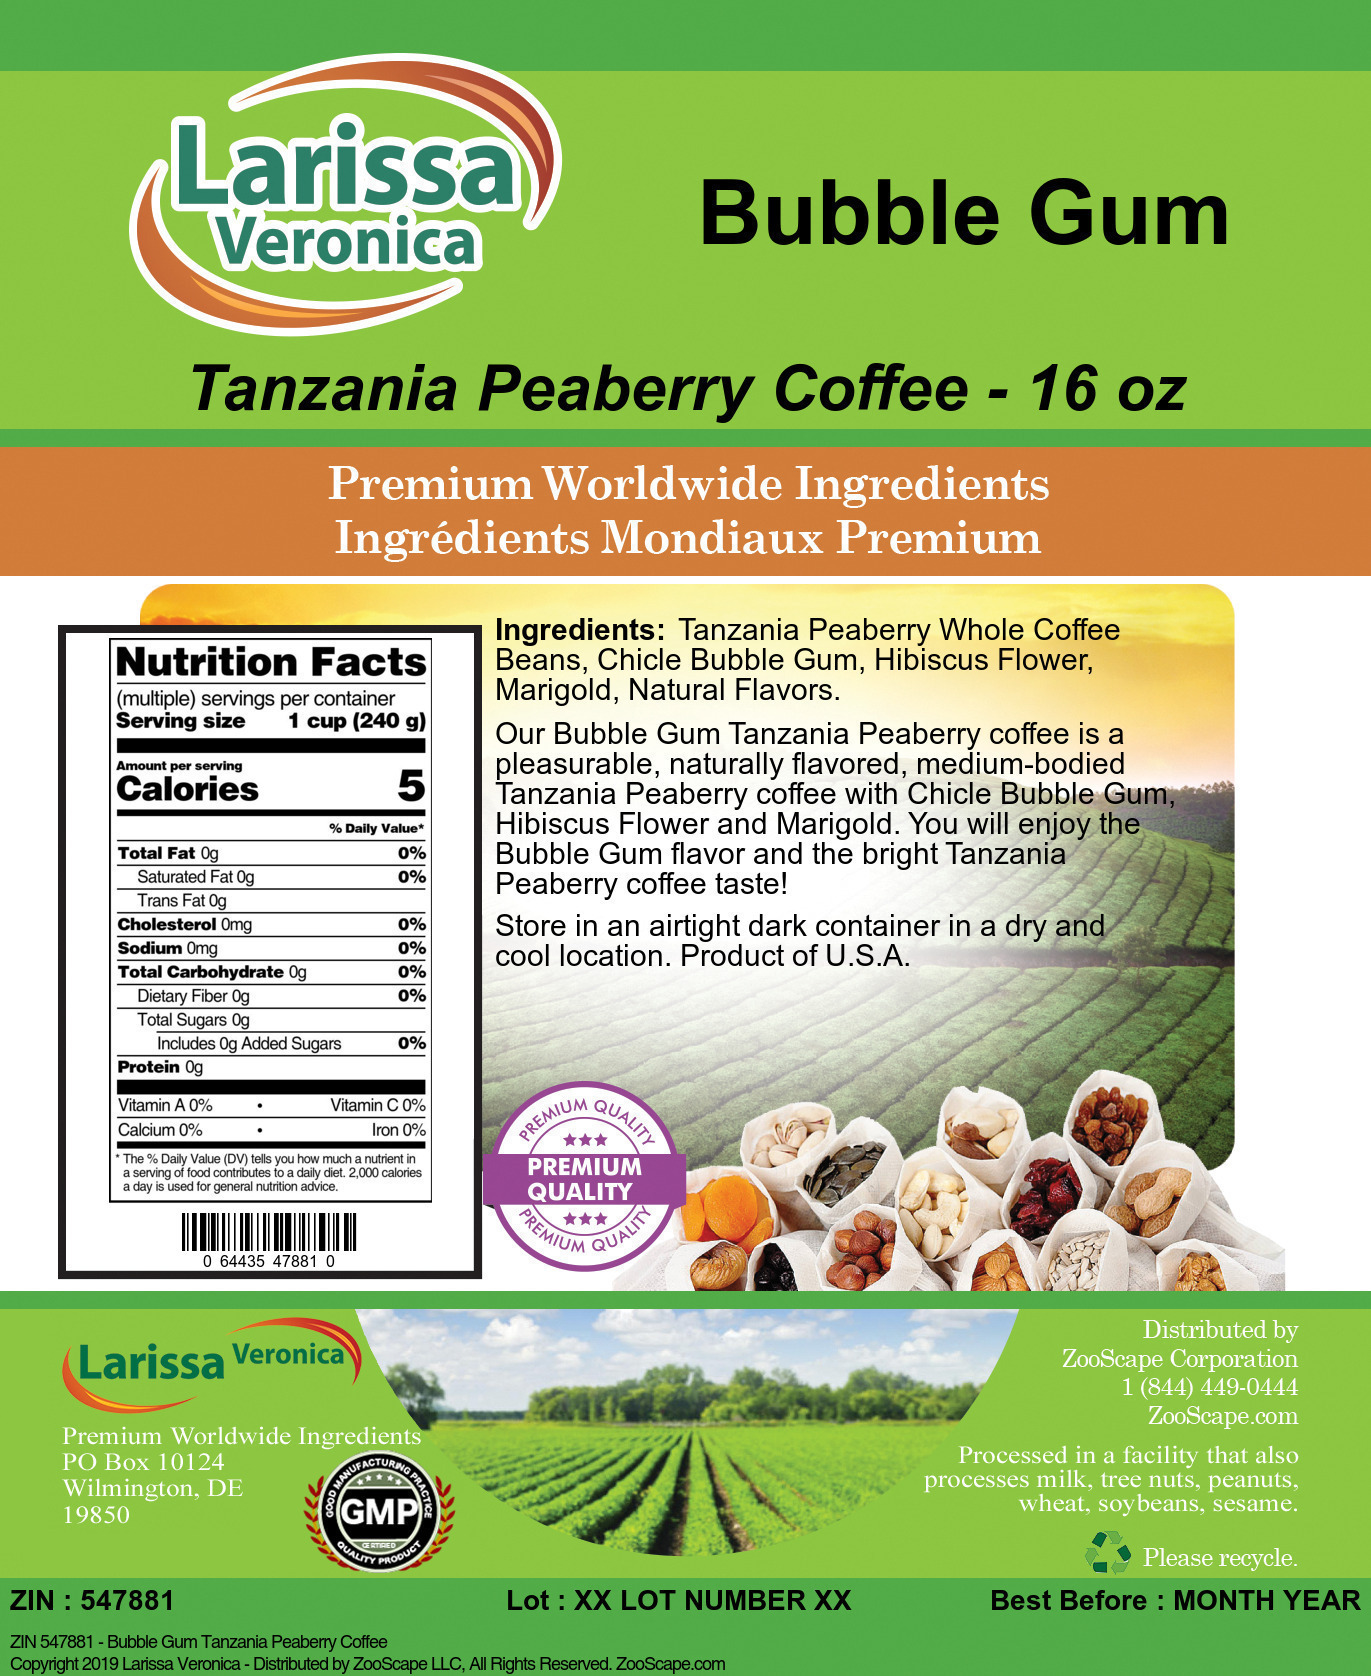 Bubble Gum Tanzania Peaberry Coffee - Label